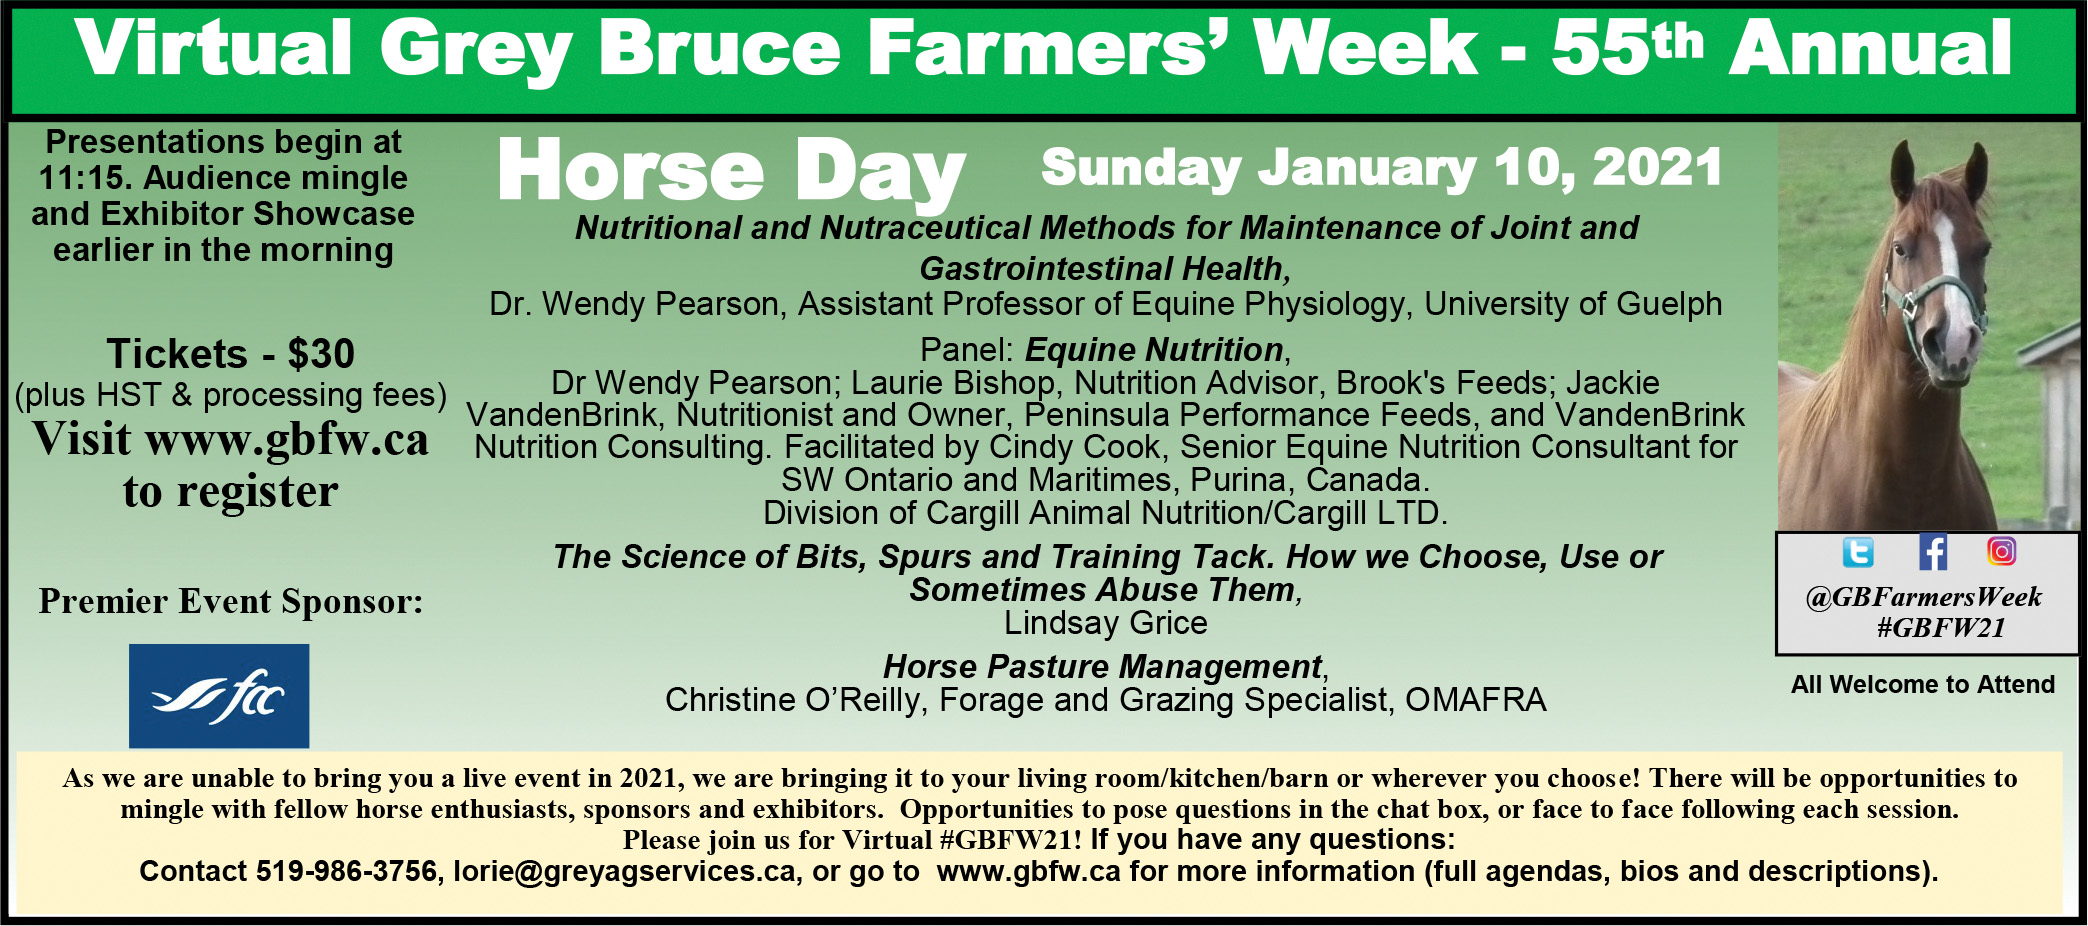 Grey Bruce Farmers' Week